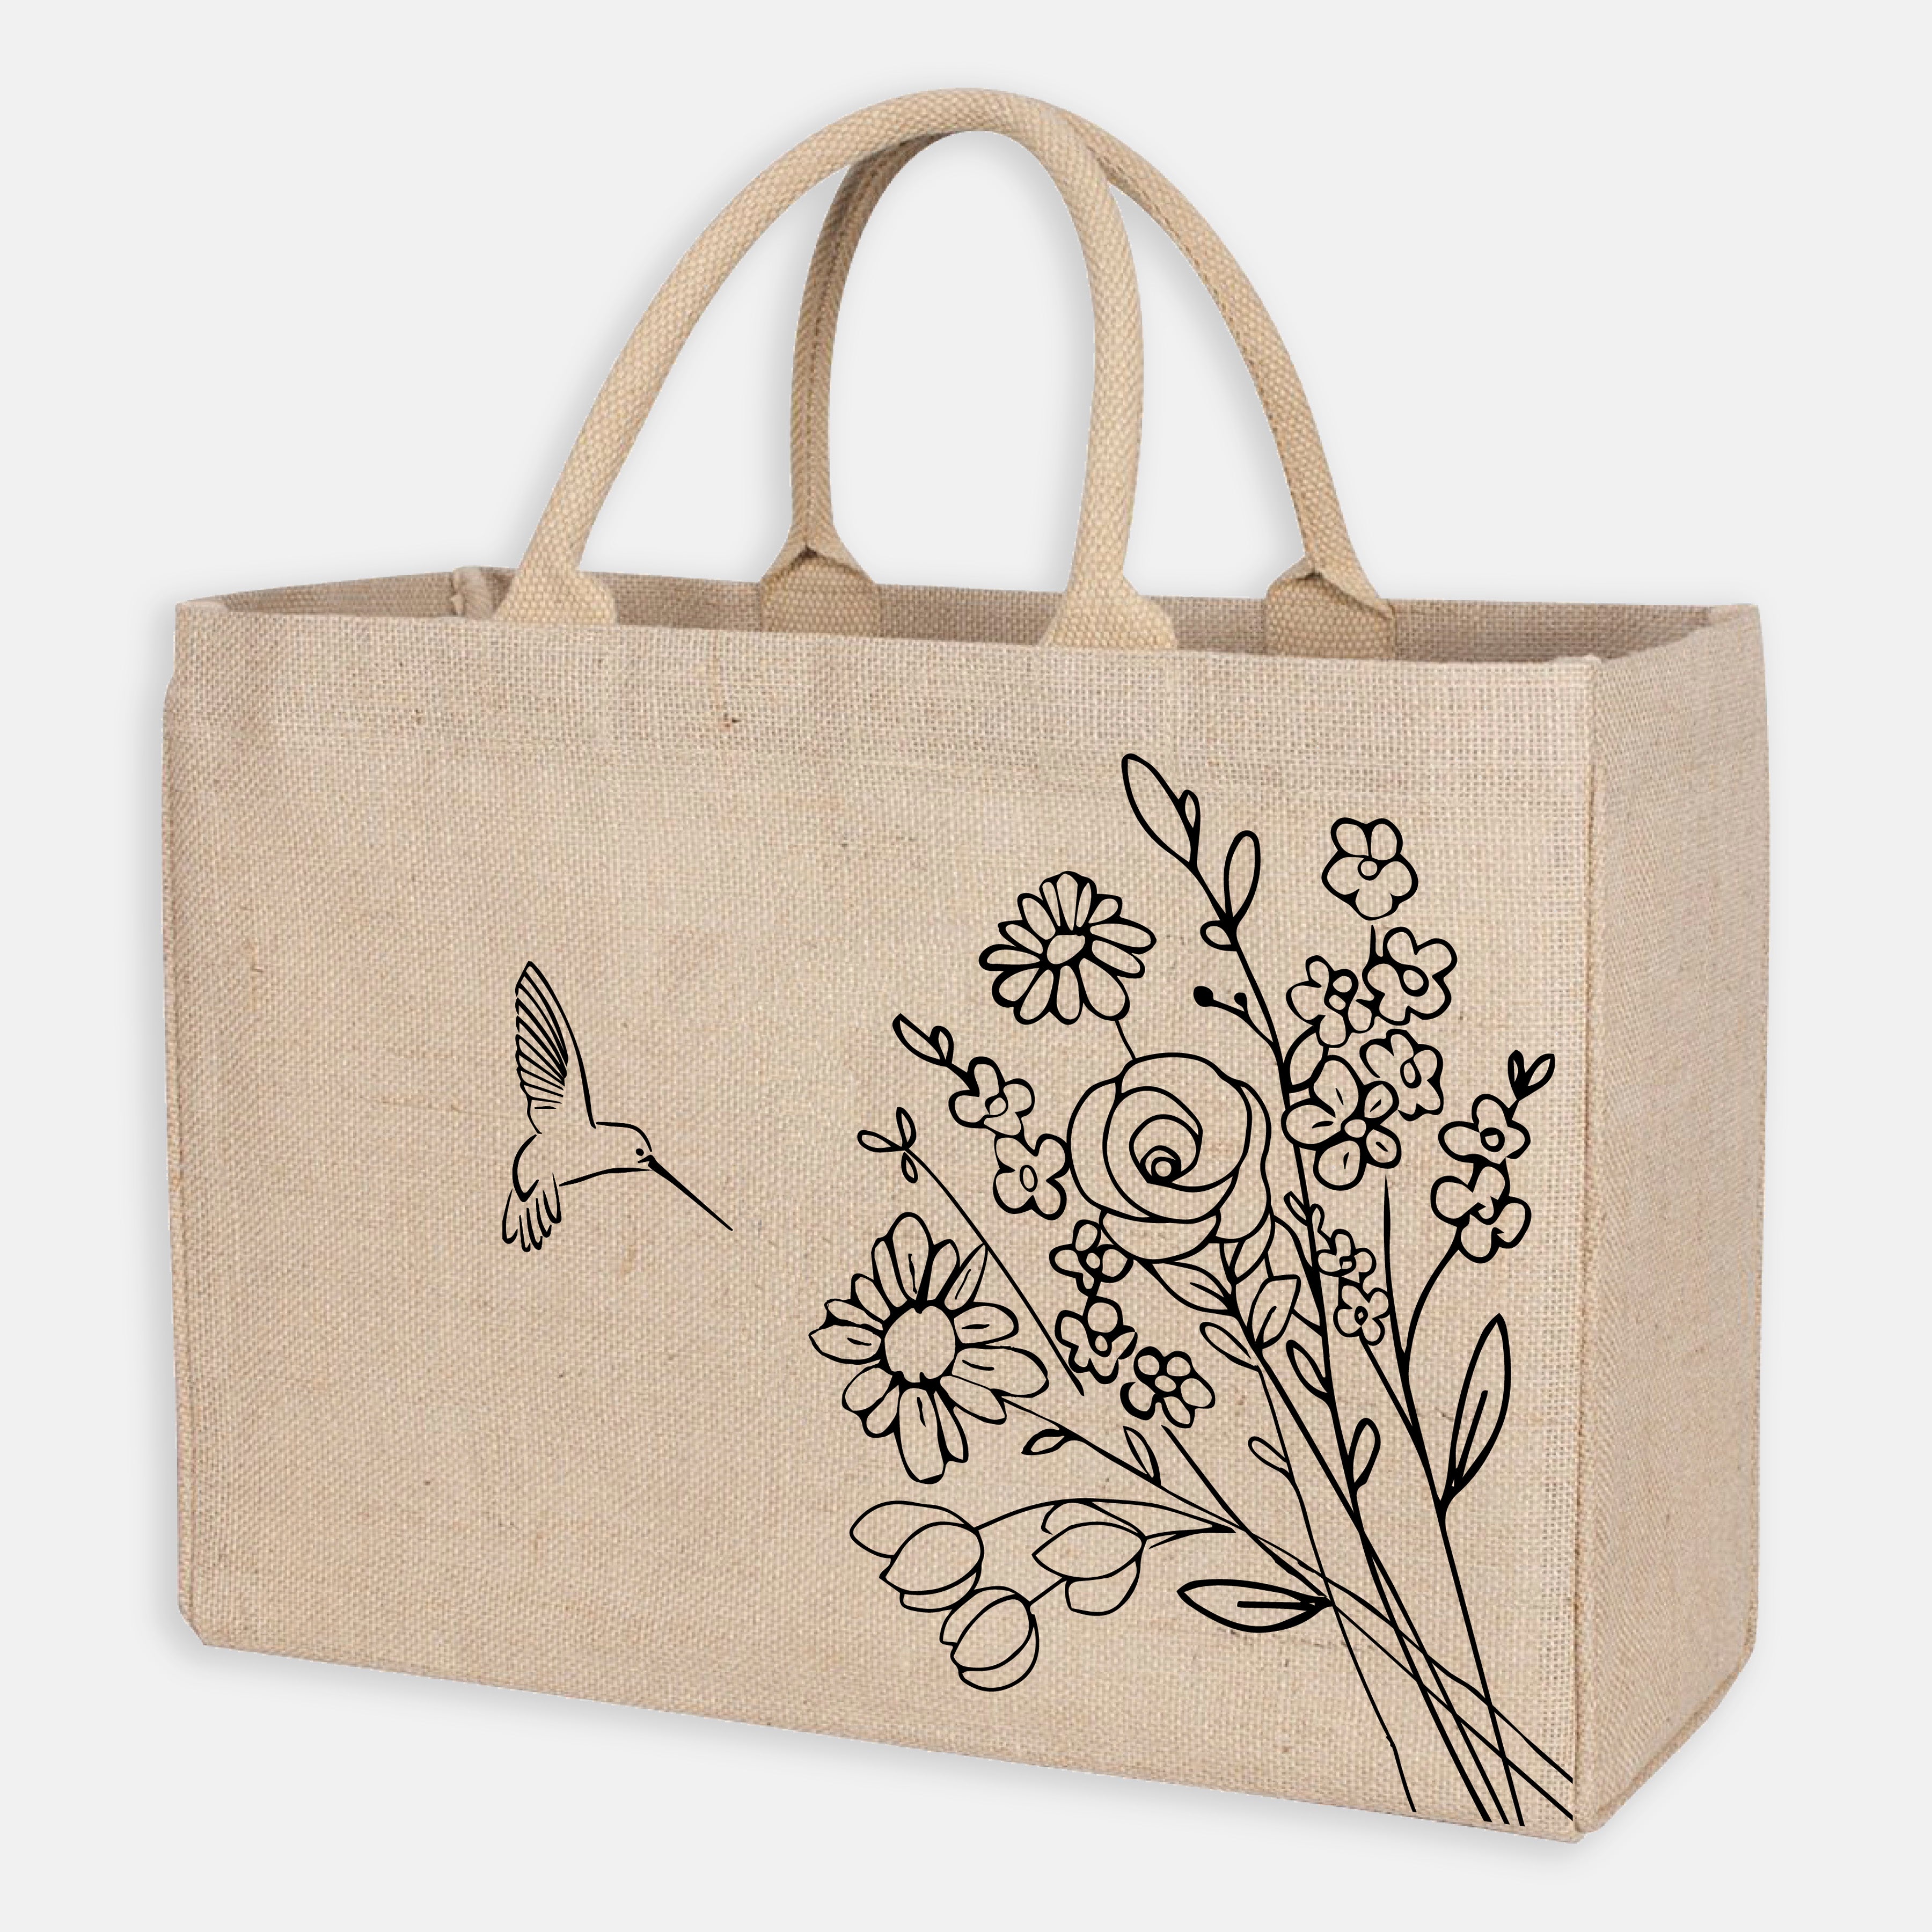 Buy Jute Shoulder Bags for Women and Girls | Trendy Bags | Fashionable Tote  | Office Bags | Jute Handbag | Jute Bag with Zip | Reusable Bags | Printed Jute  Bags | Natural at Amazon.in